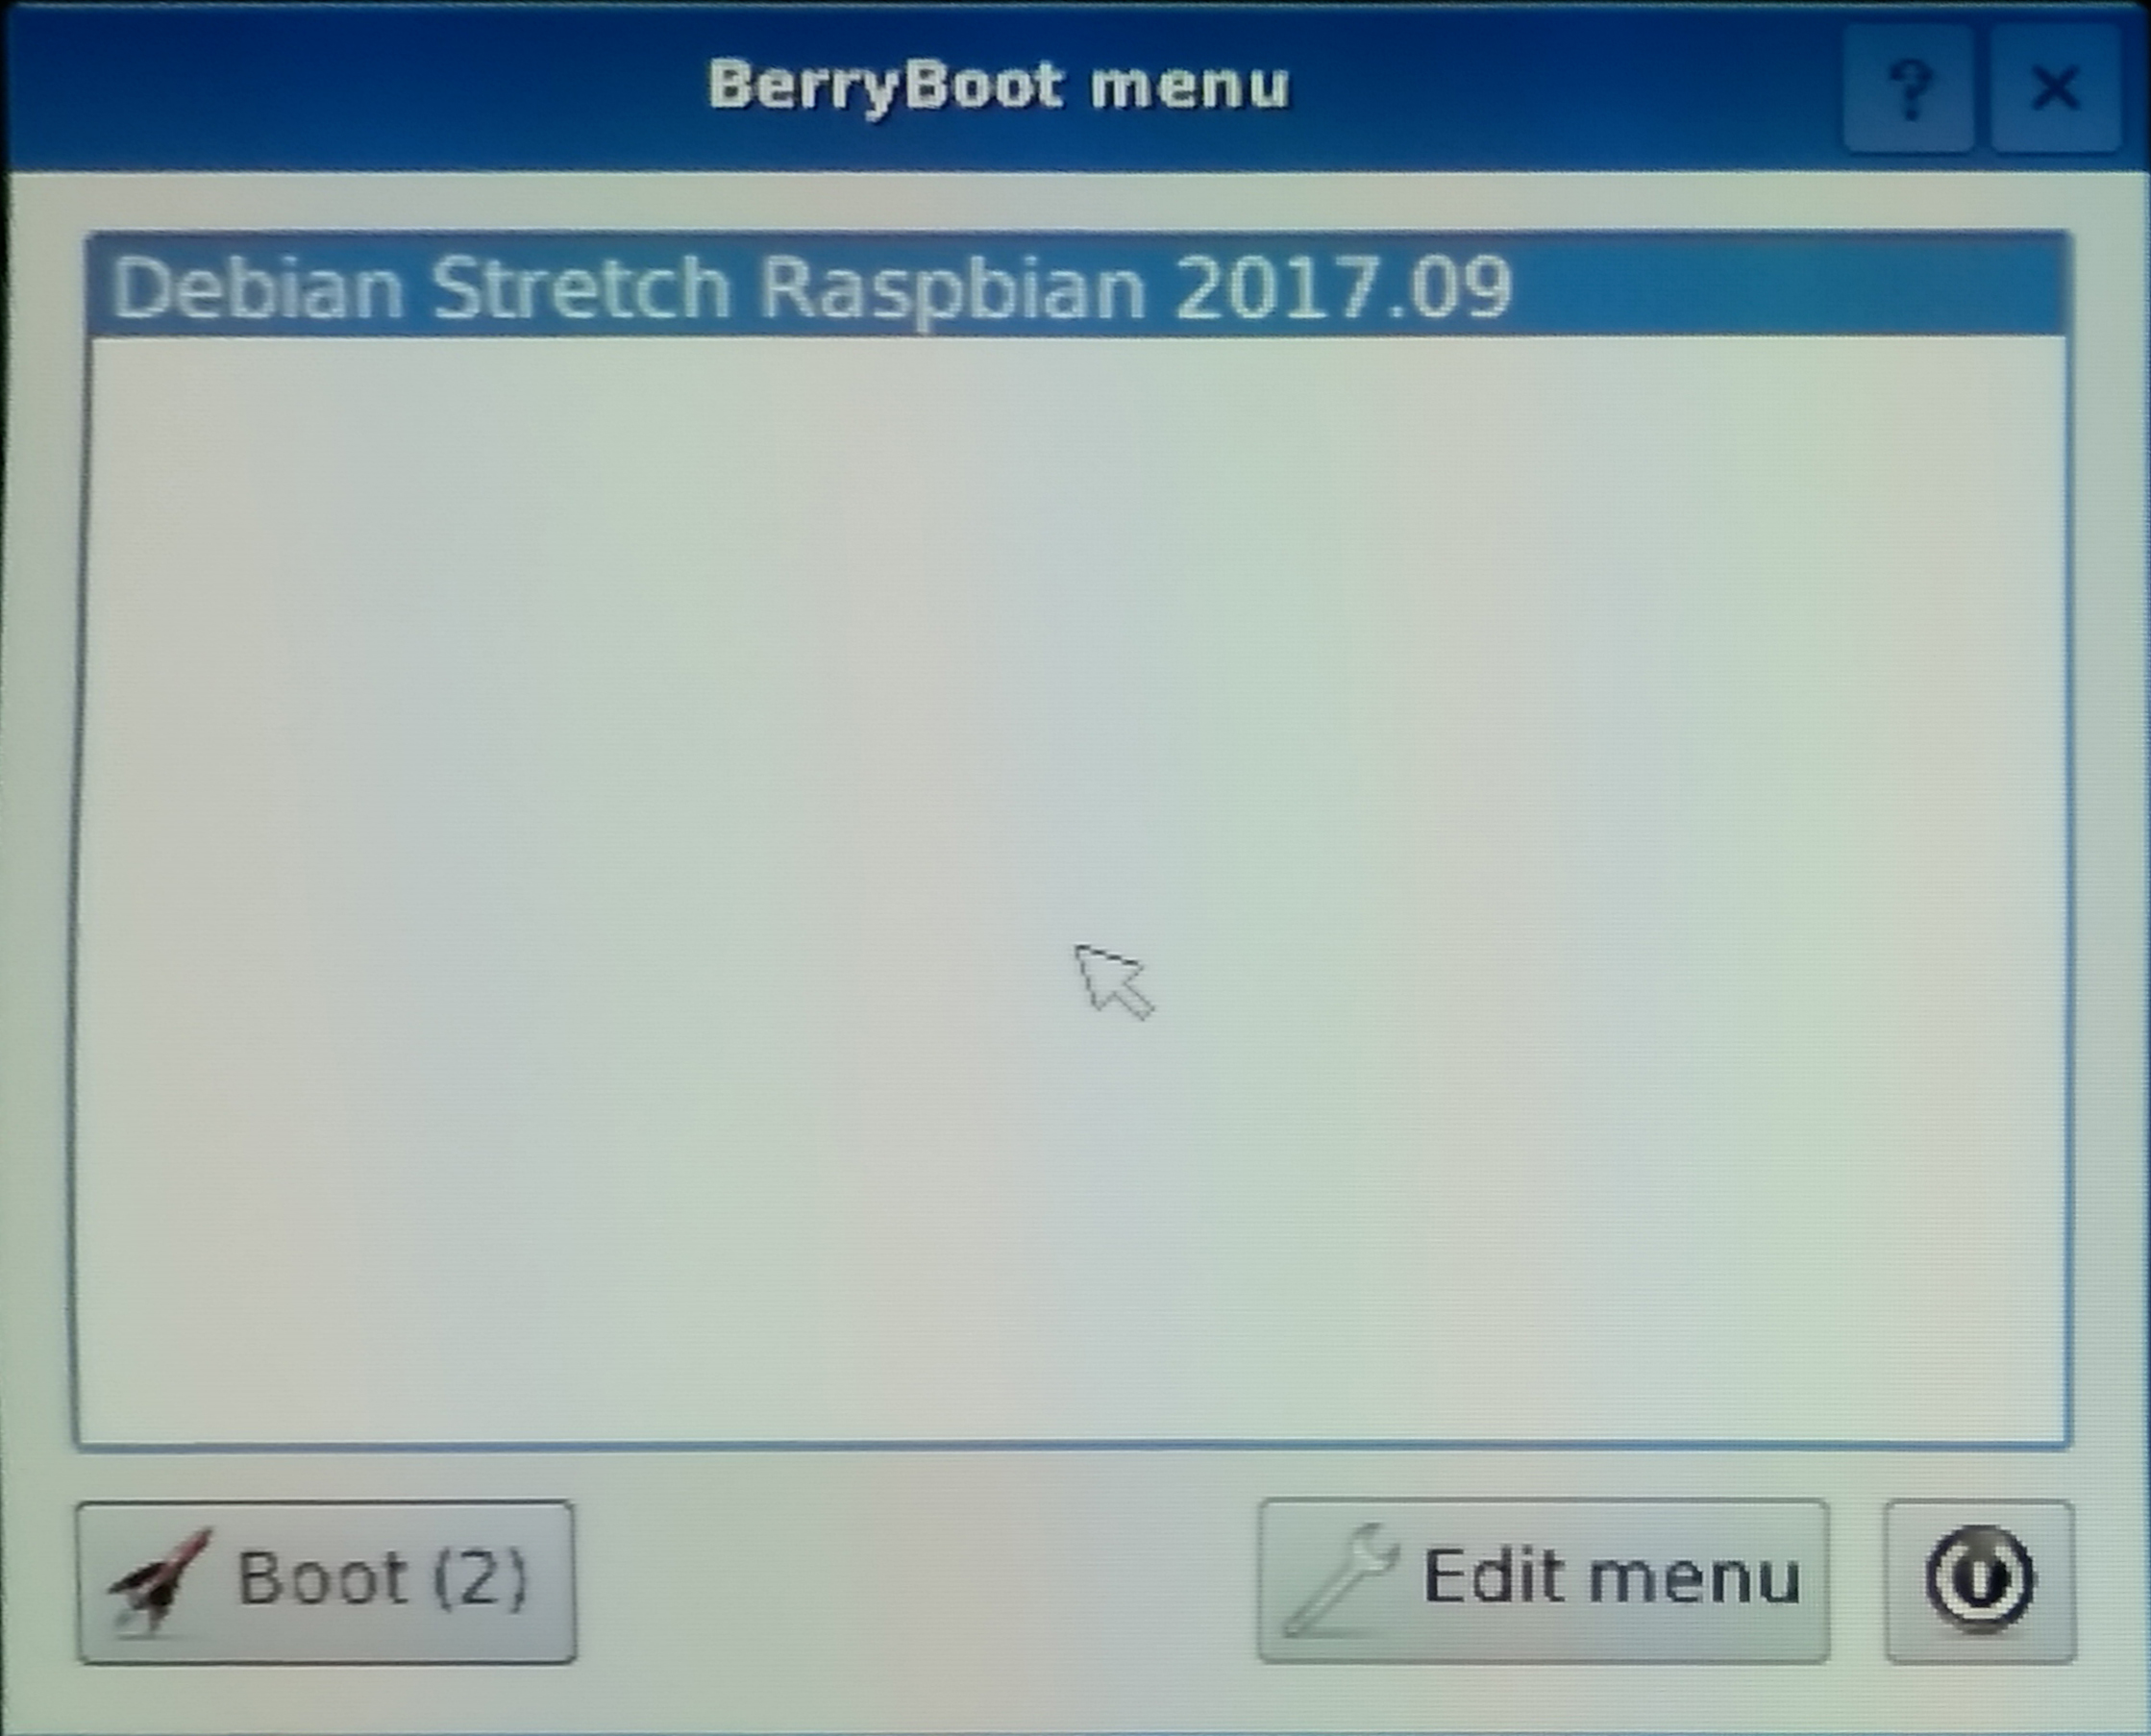 BerryBoot tela inicial.